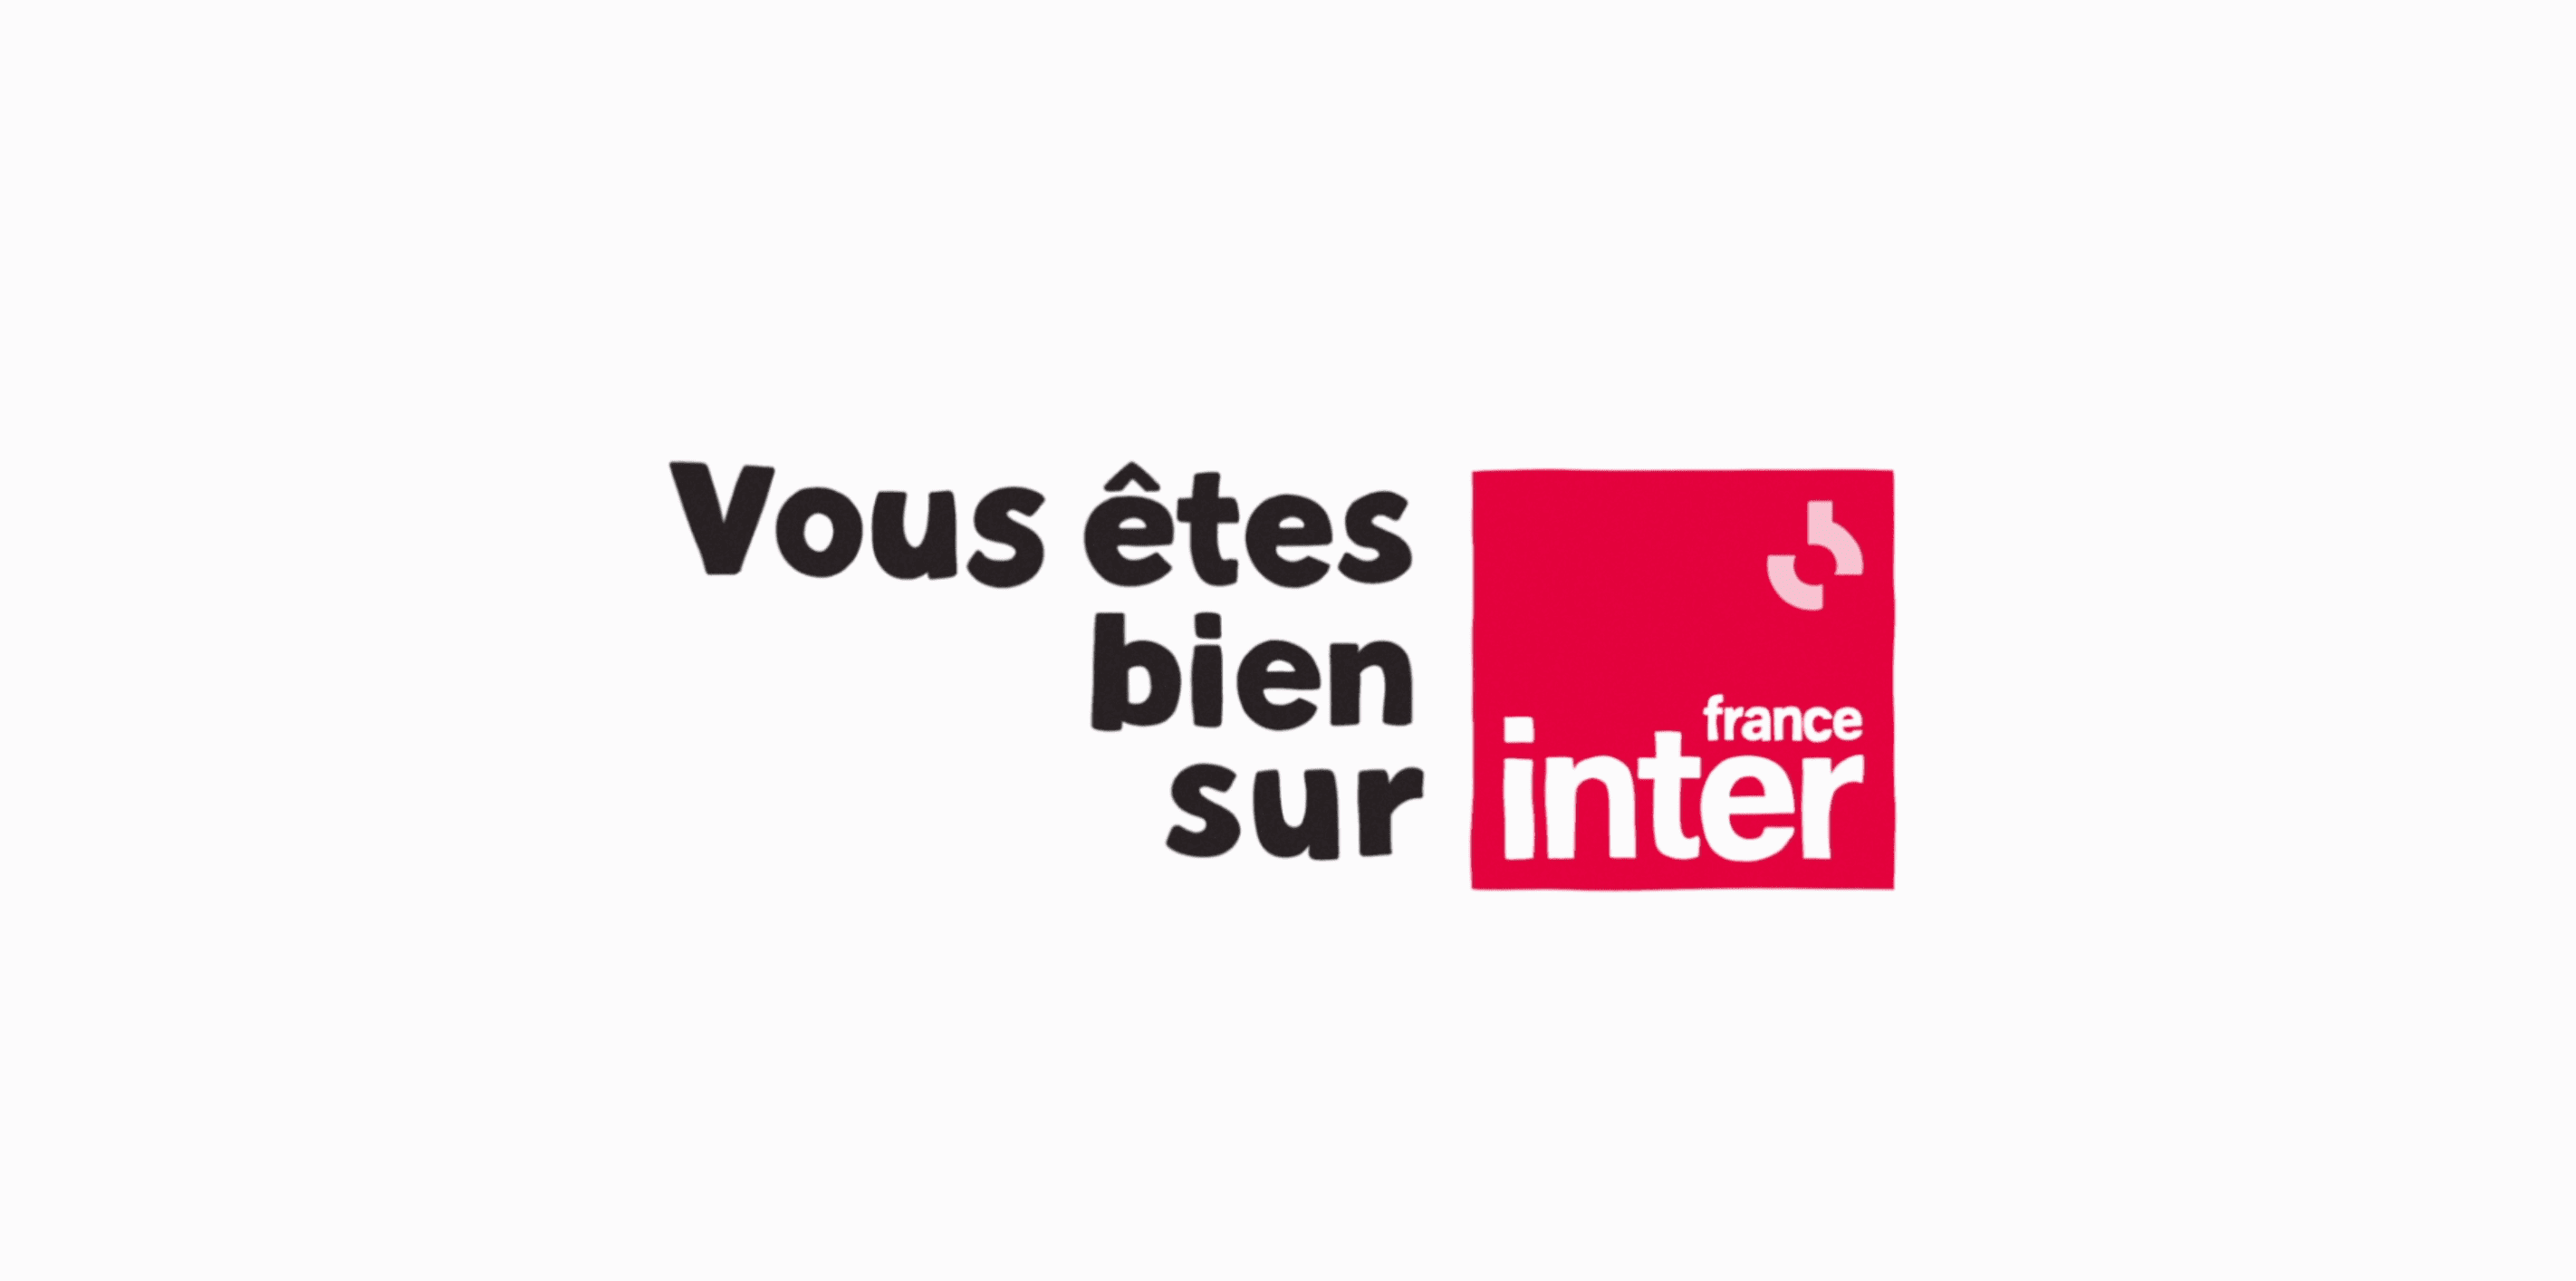 FRANCE_INTER_VOUS_ETES_BIEN_2021_ARTEFACT_3000_1